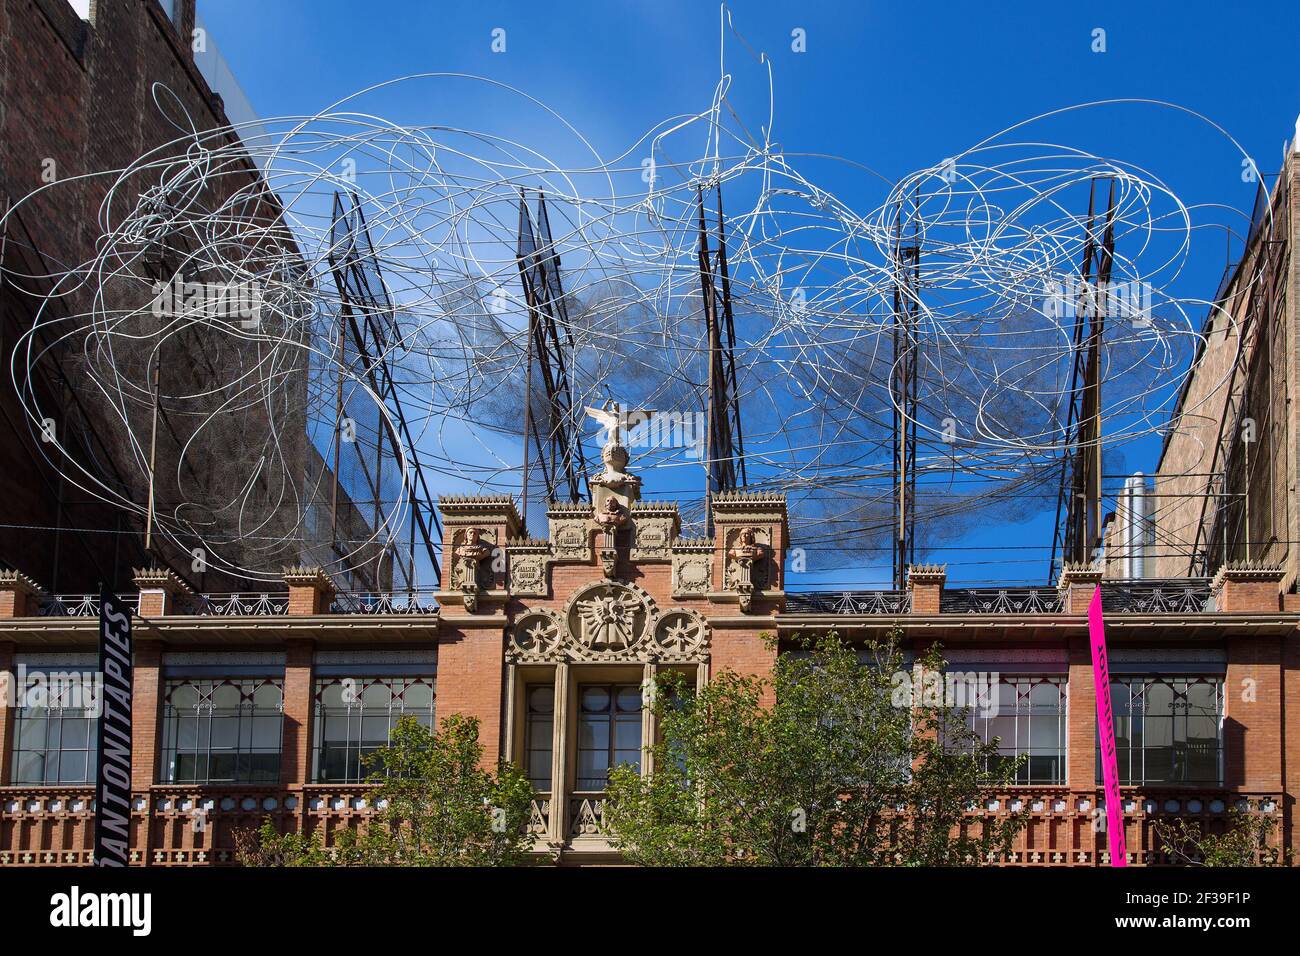 Geografia / viaggio, Spagna, Barcellona, Fundacio Antoni Tapies, filo scultura nuvola e sedia, Nuvol i , Additional-Rights-Clearance-Info-Not-Available Foto Stock